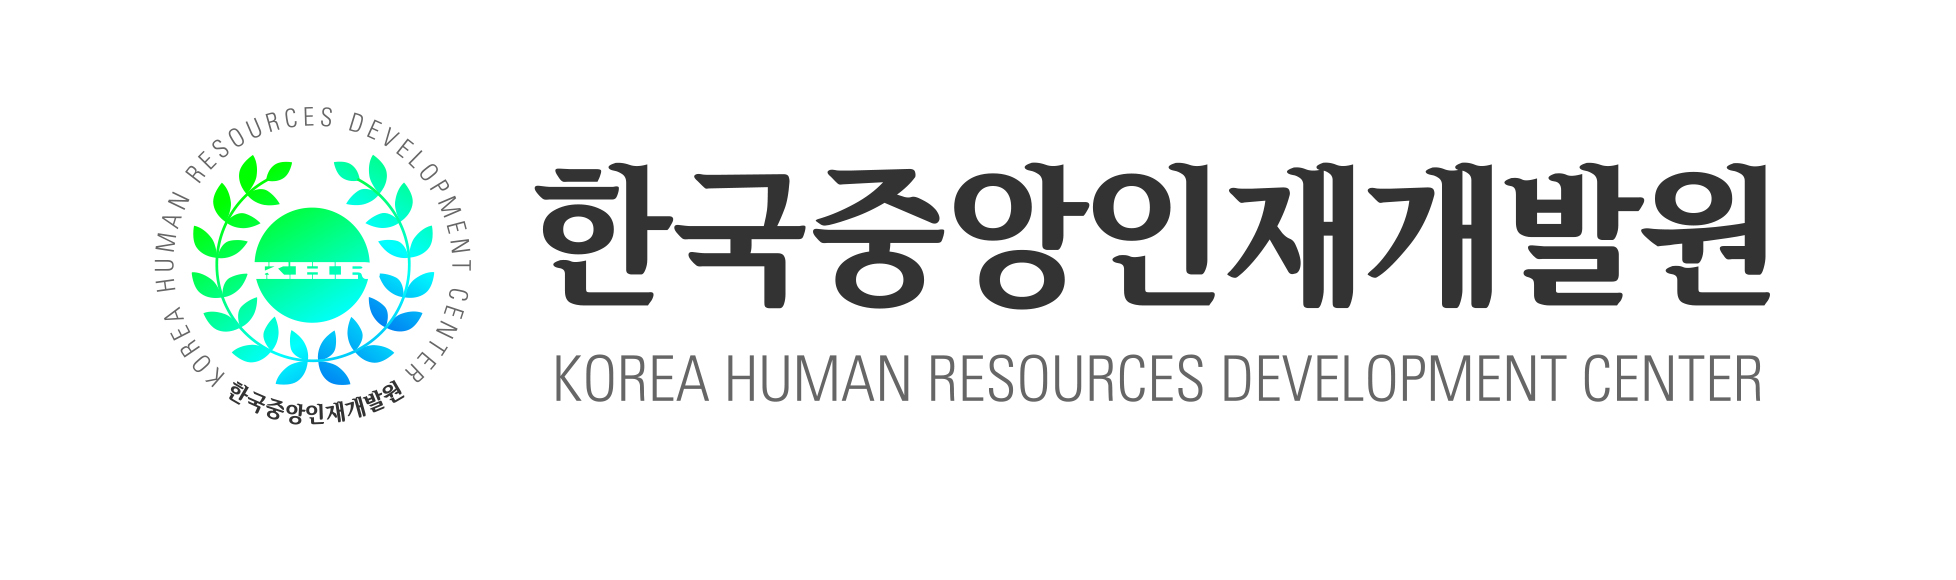 한국중앙인재개발원(주)의 기업로고